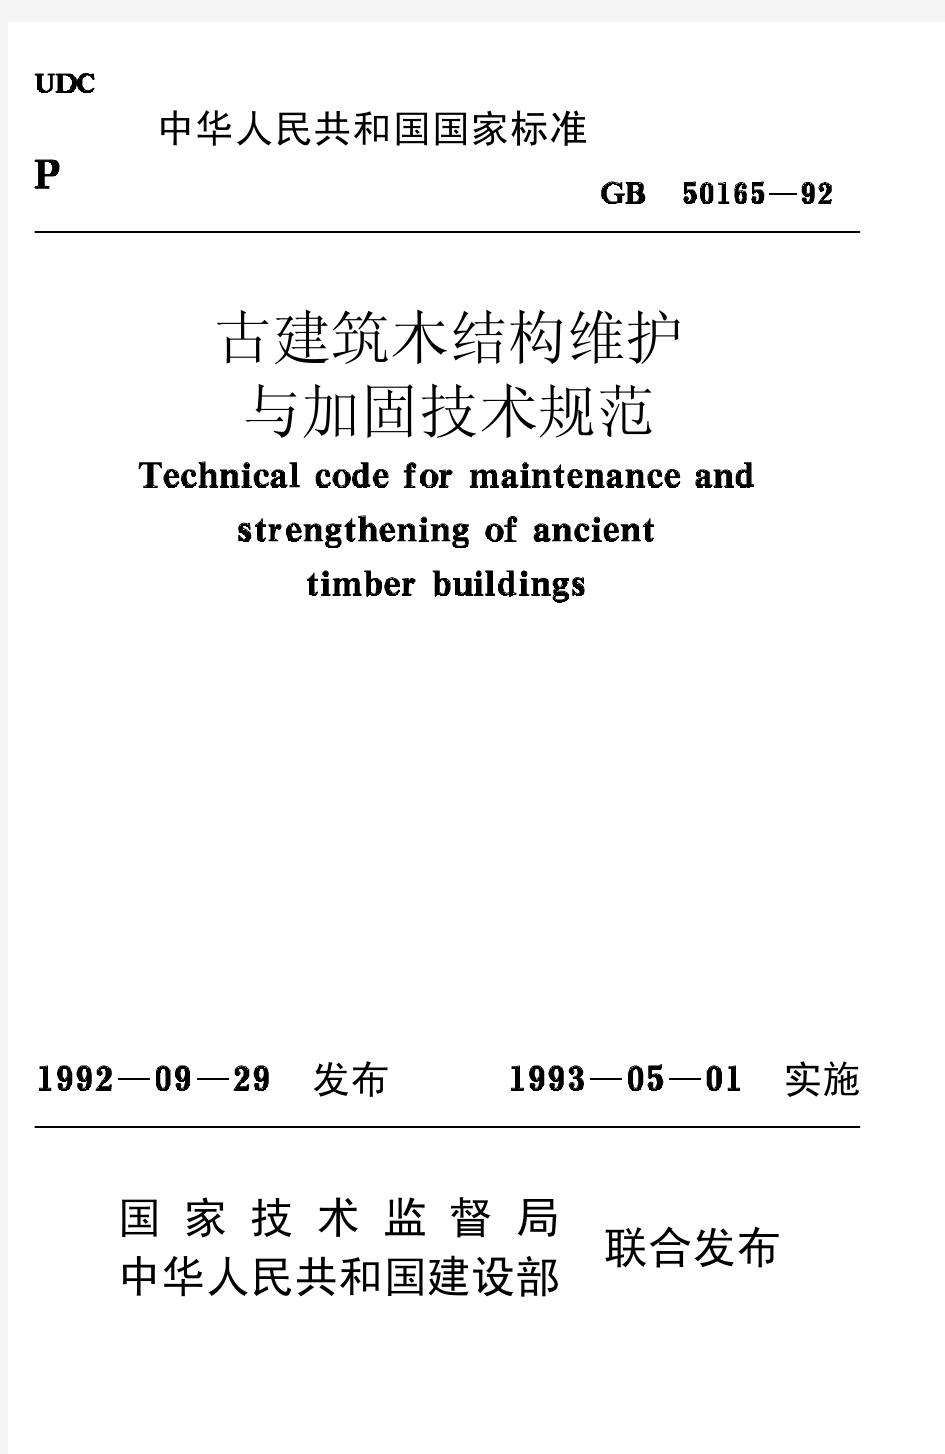 古建筑木结构维护与加固技术规范_GB50165-92